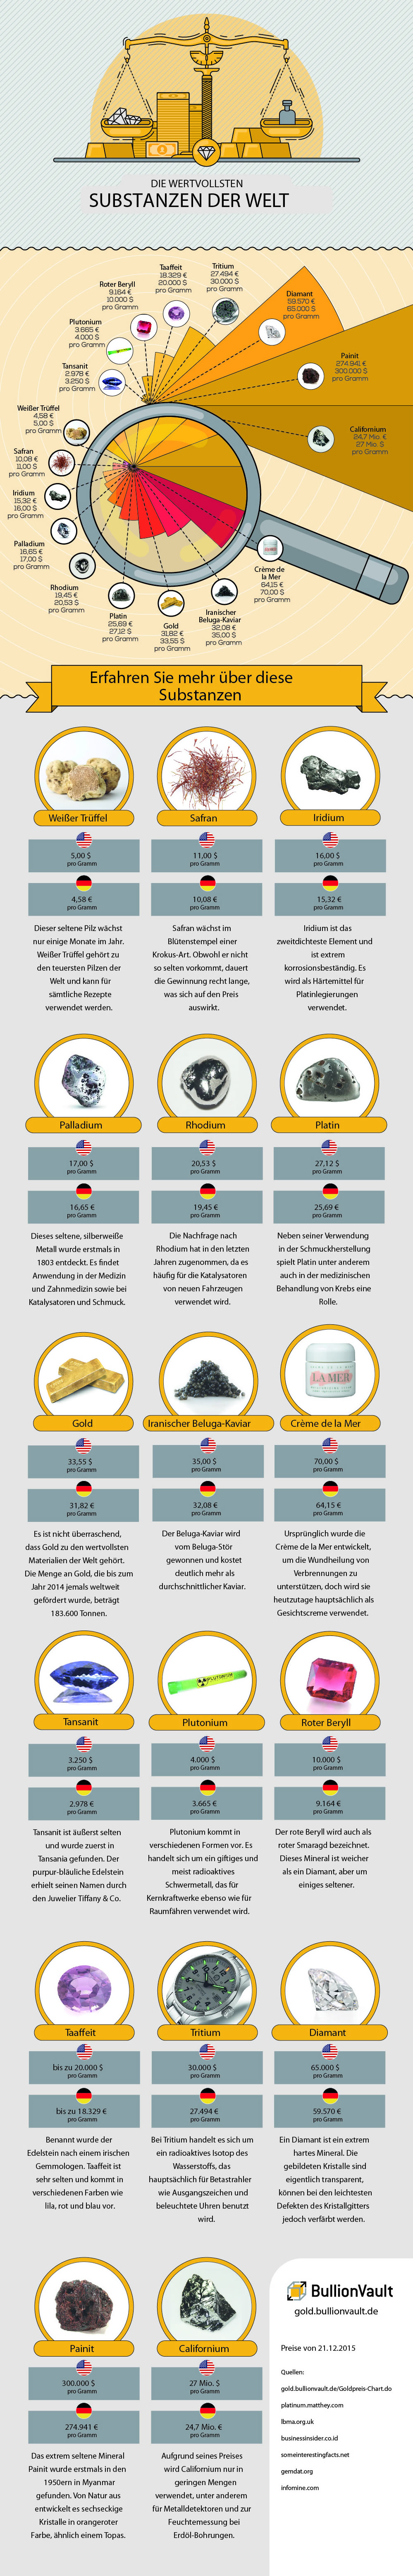 Infografik wertvollste Substanzen